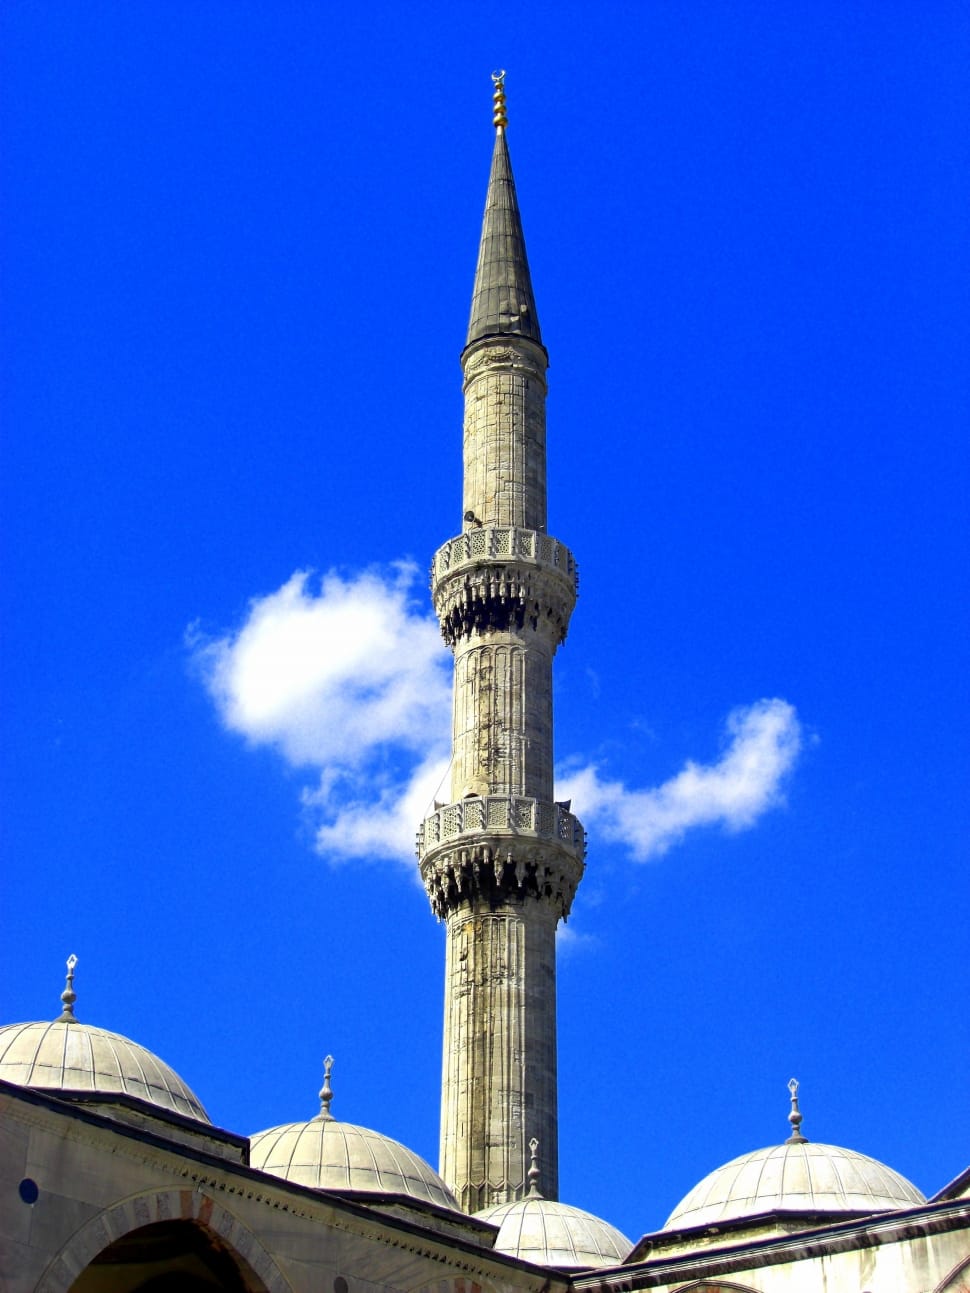 Cloud, Blue, Sky, Mosque, Minaret, architecture, blue preview